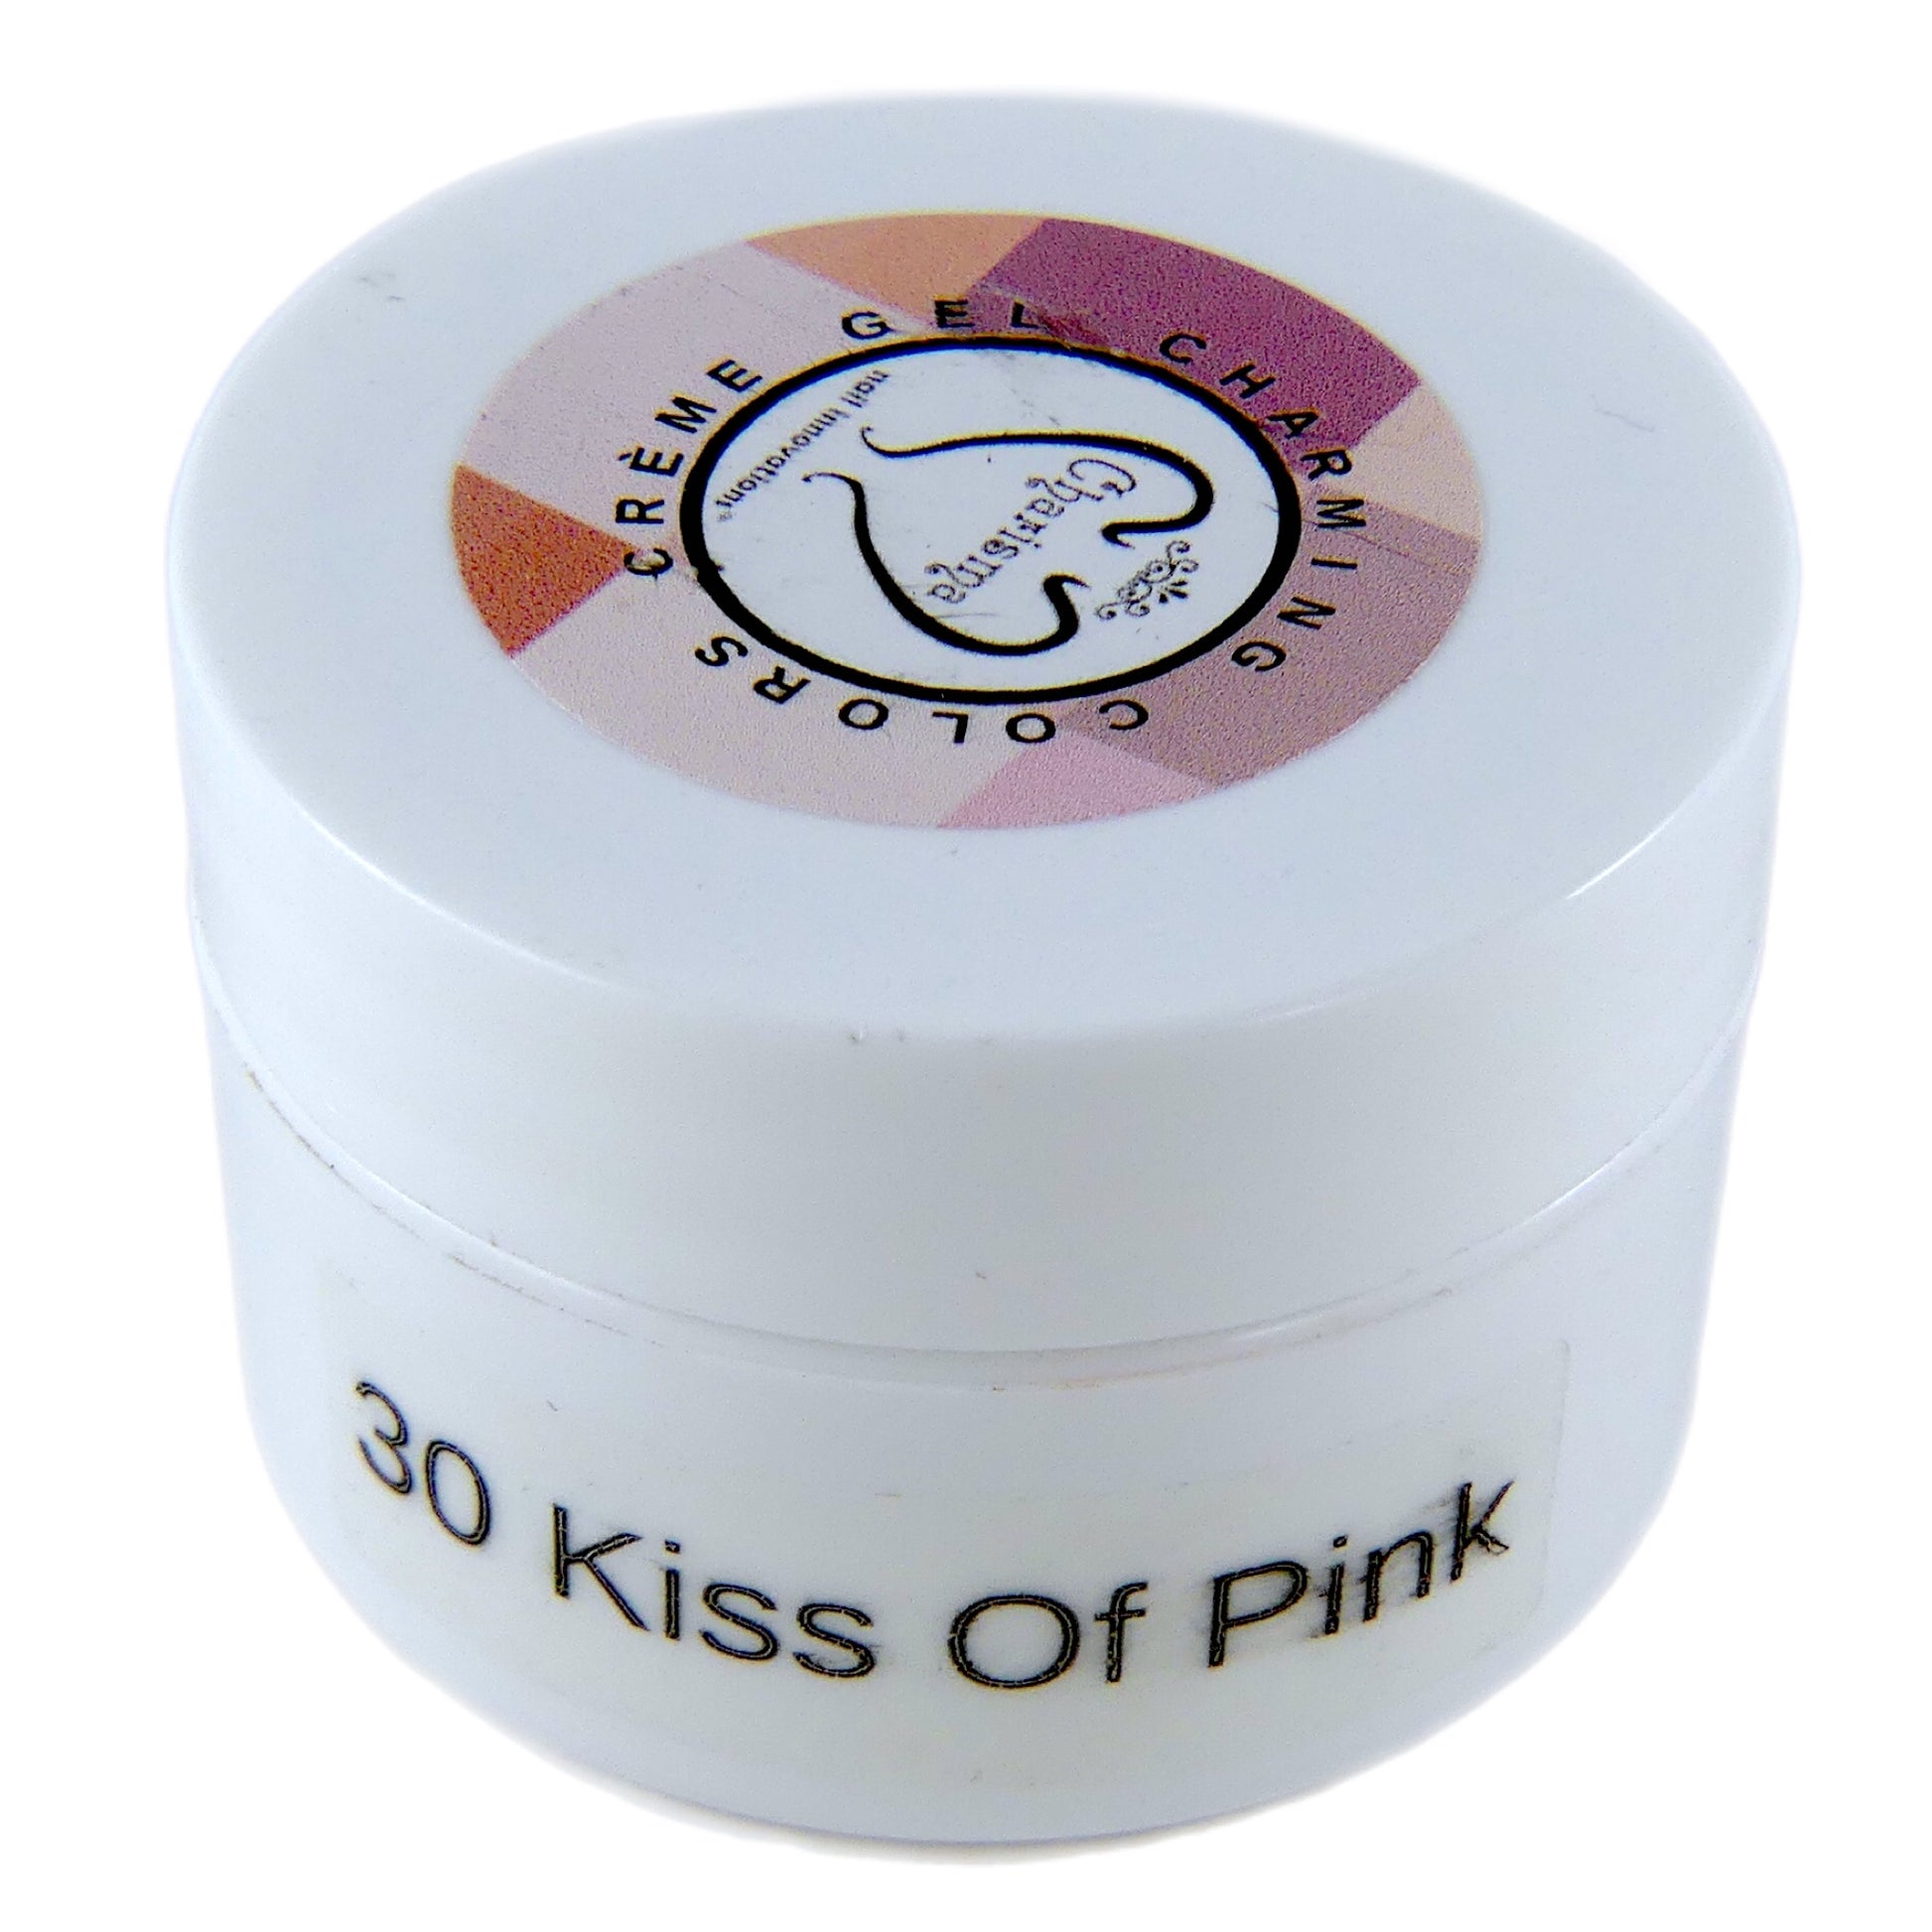 Builder Gel (Kiss of Pink #30) 1/2 oz - My Little Nail Art Shop